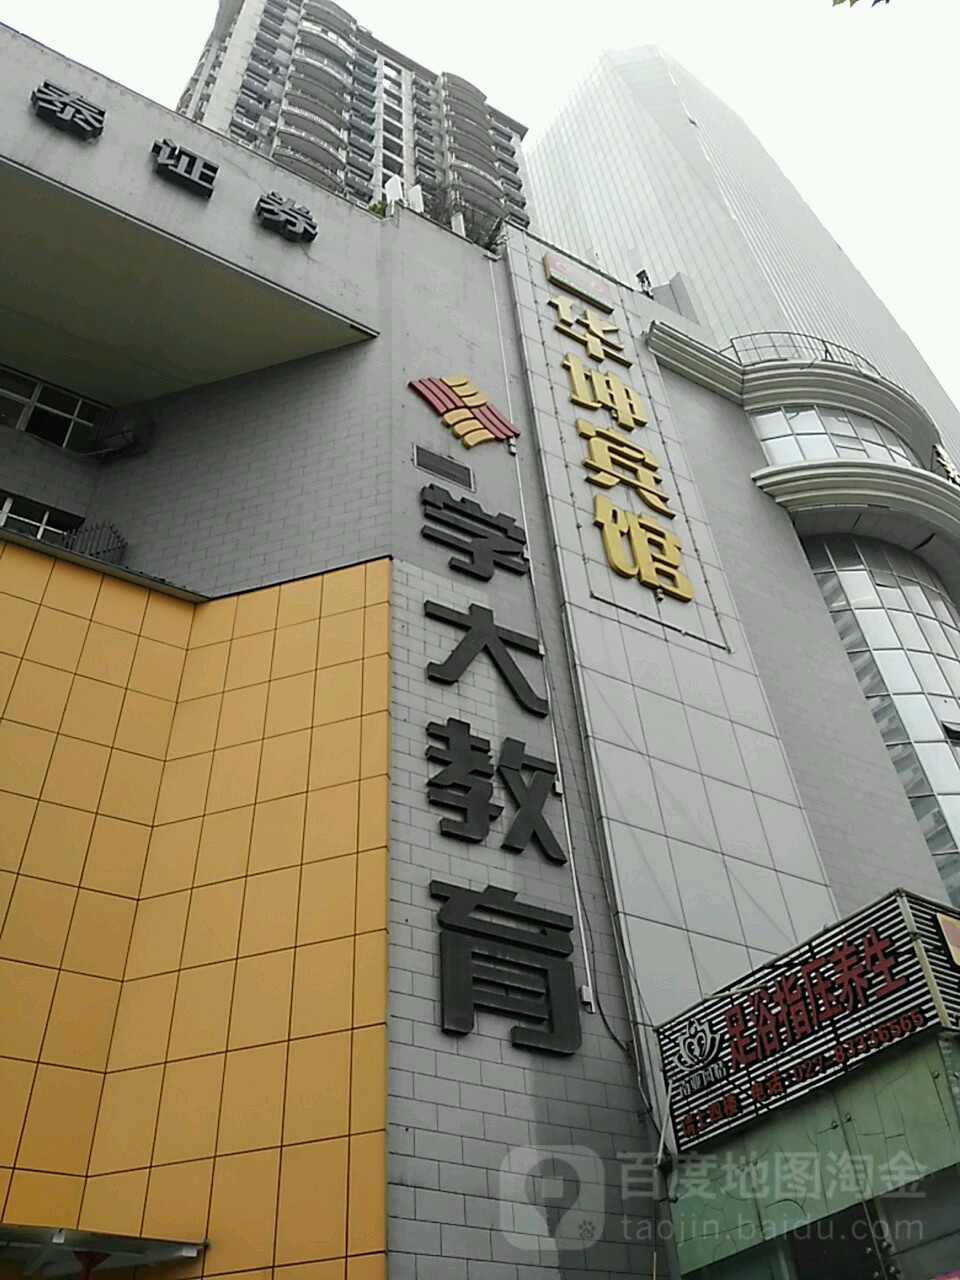 學大教育(武漢青年路學習中心)